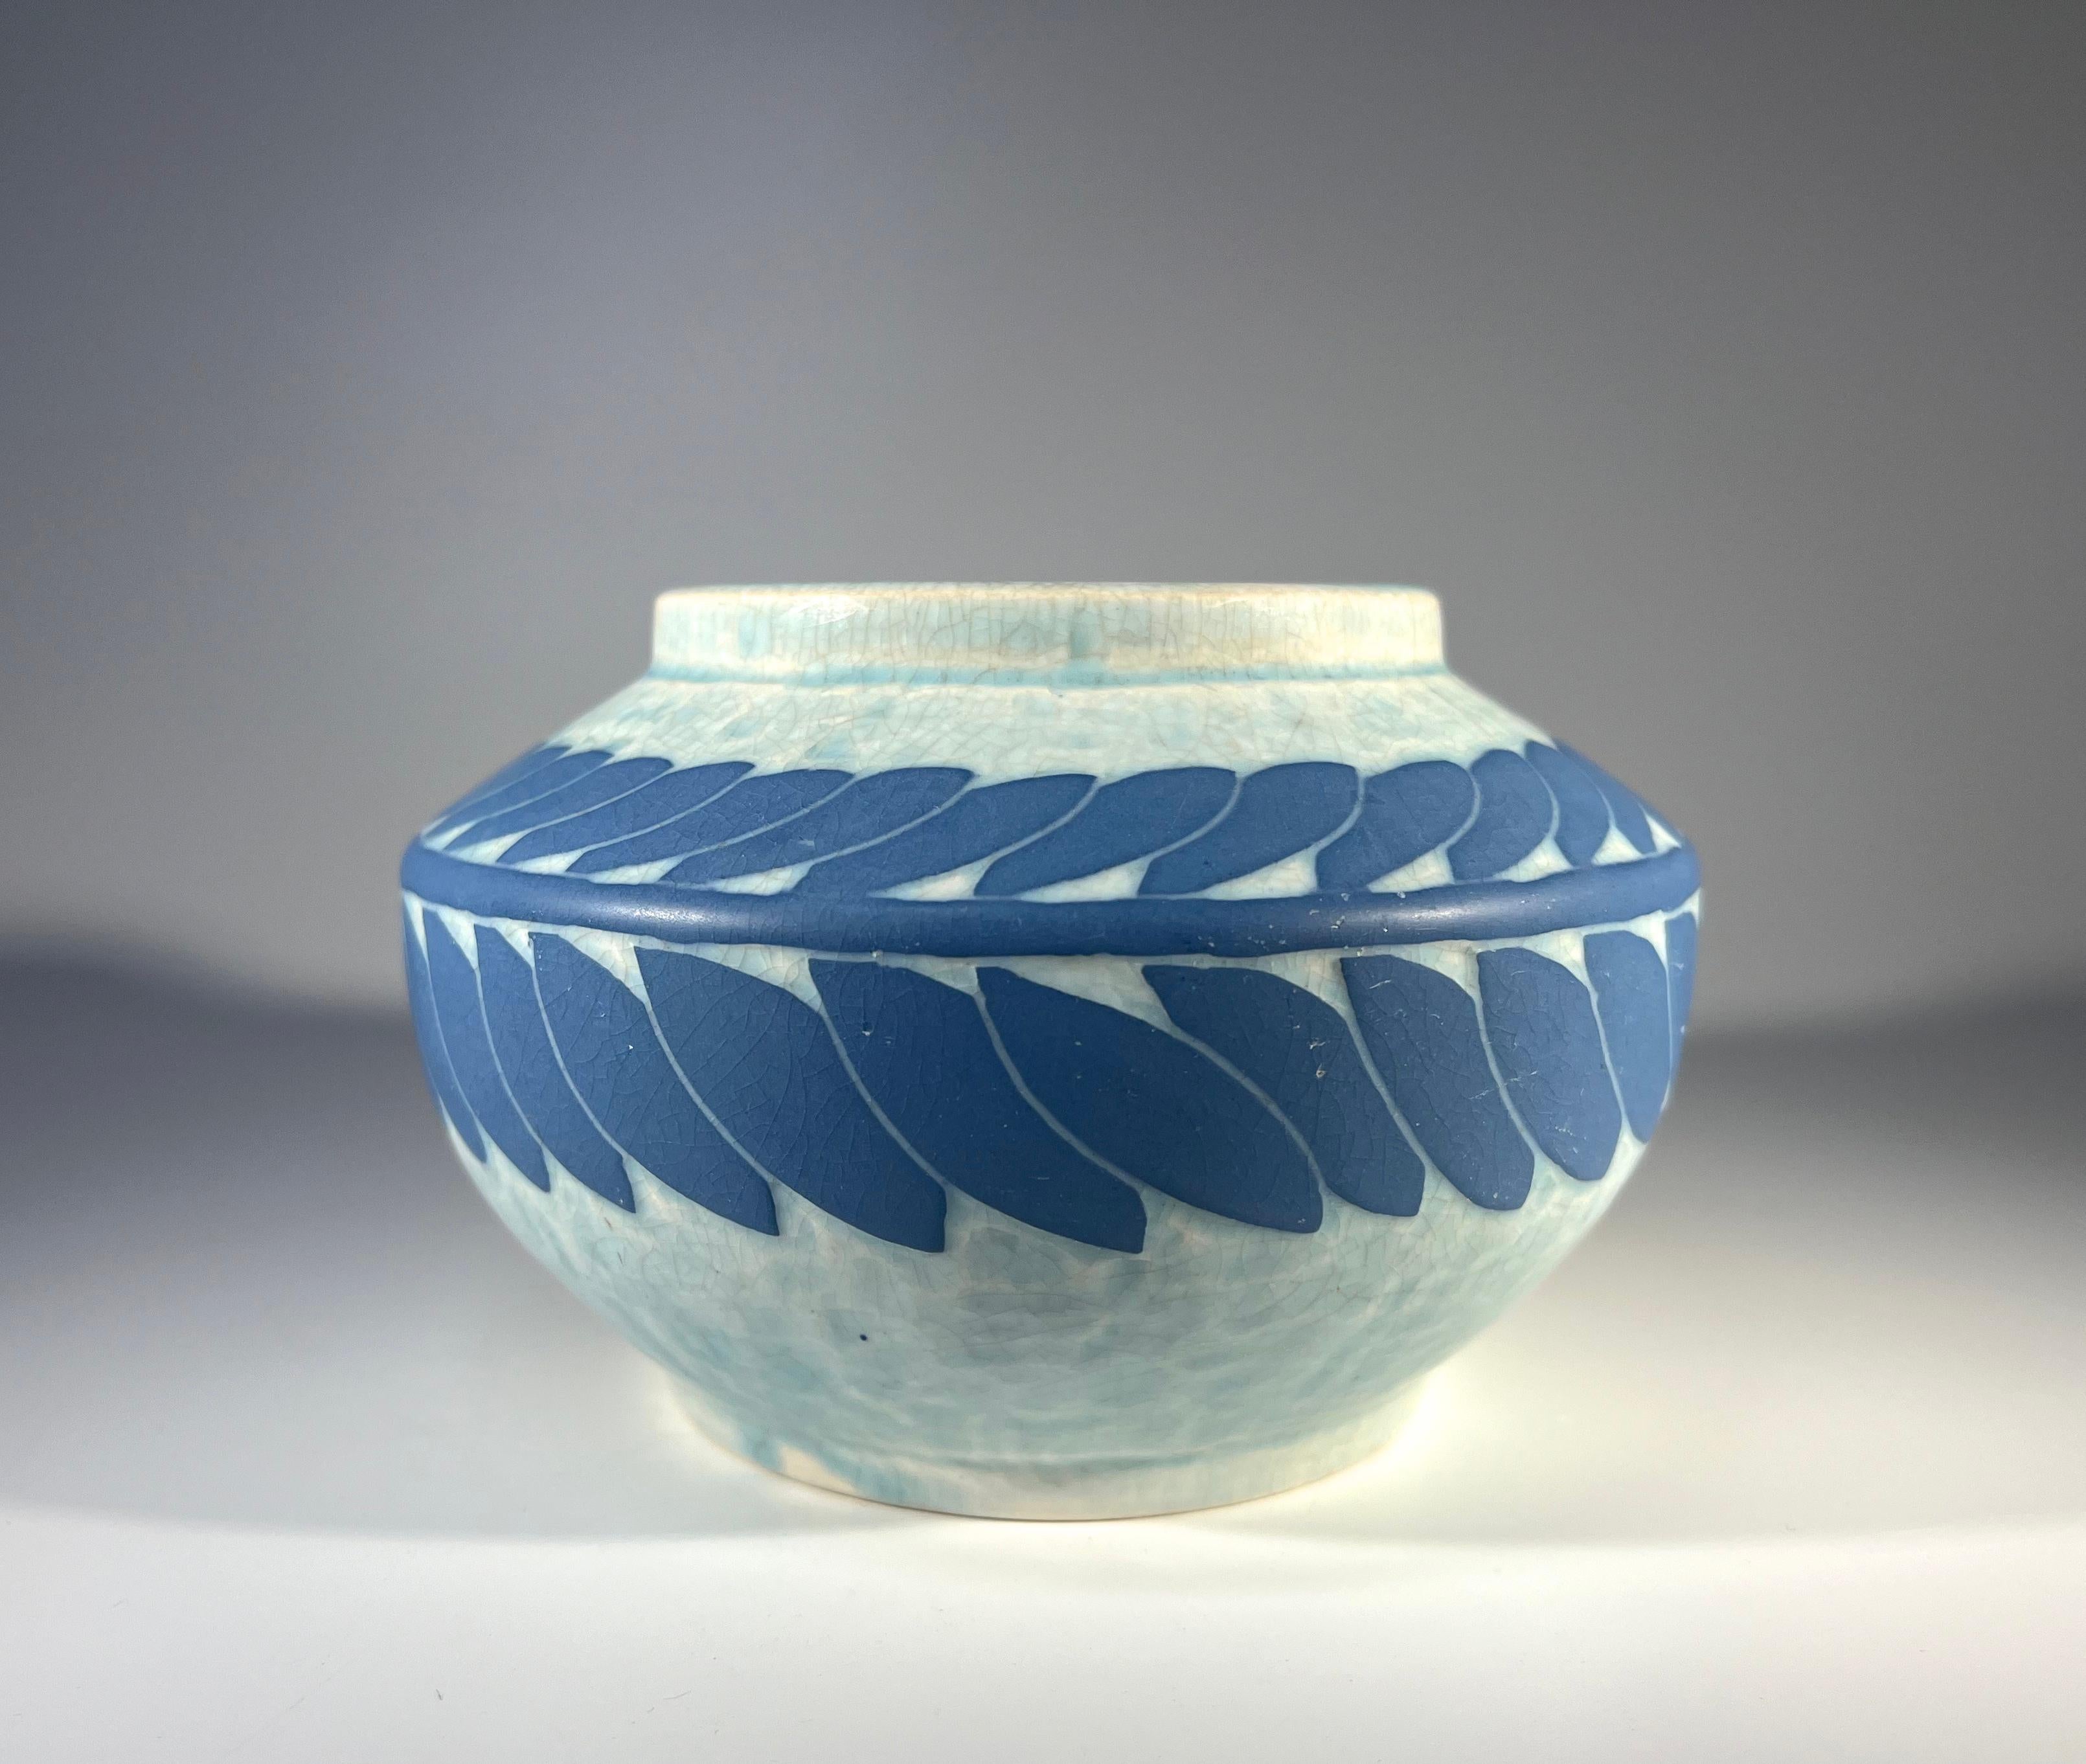 Vase Art Déco en céramique sgraffitée par Josef Ekberg pour Gustavsberg. 
Les couches se composent d'un fond bleu pâle et d'une guirlande de feuilles bleu moyen.
Signé Ekberg et daté de 1910
Hauteur 3,5 pouces, Largeur 5,5 pouces
Un exemple unique